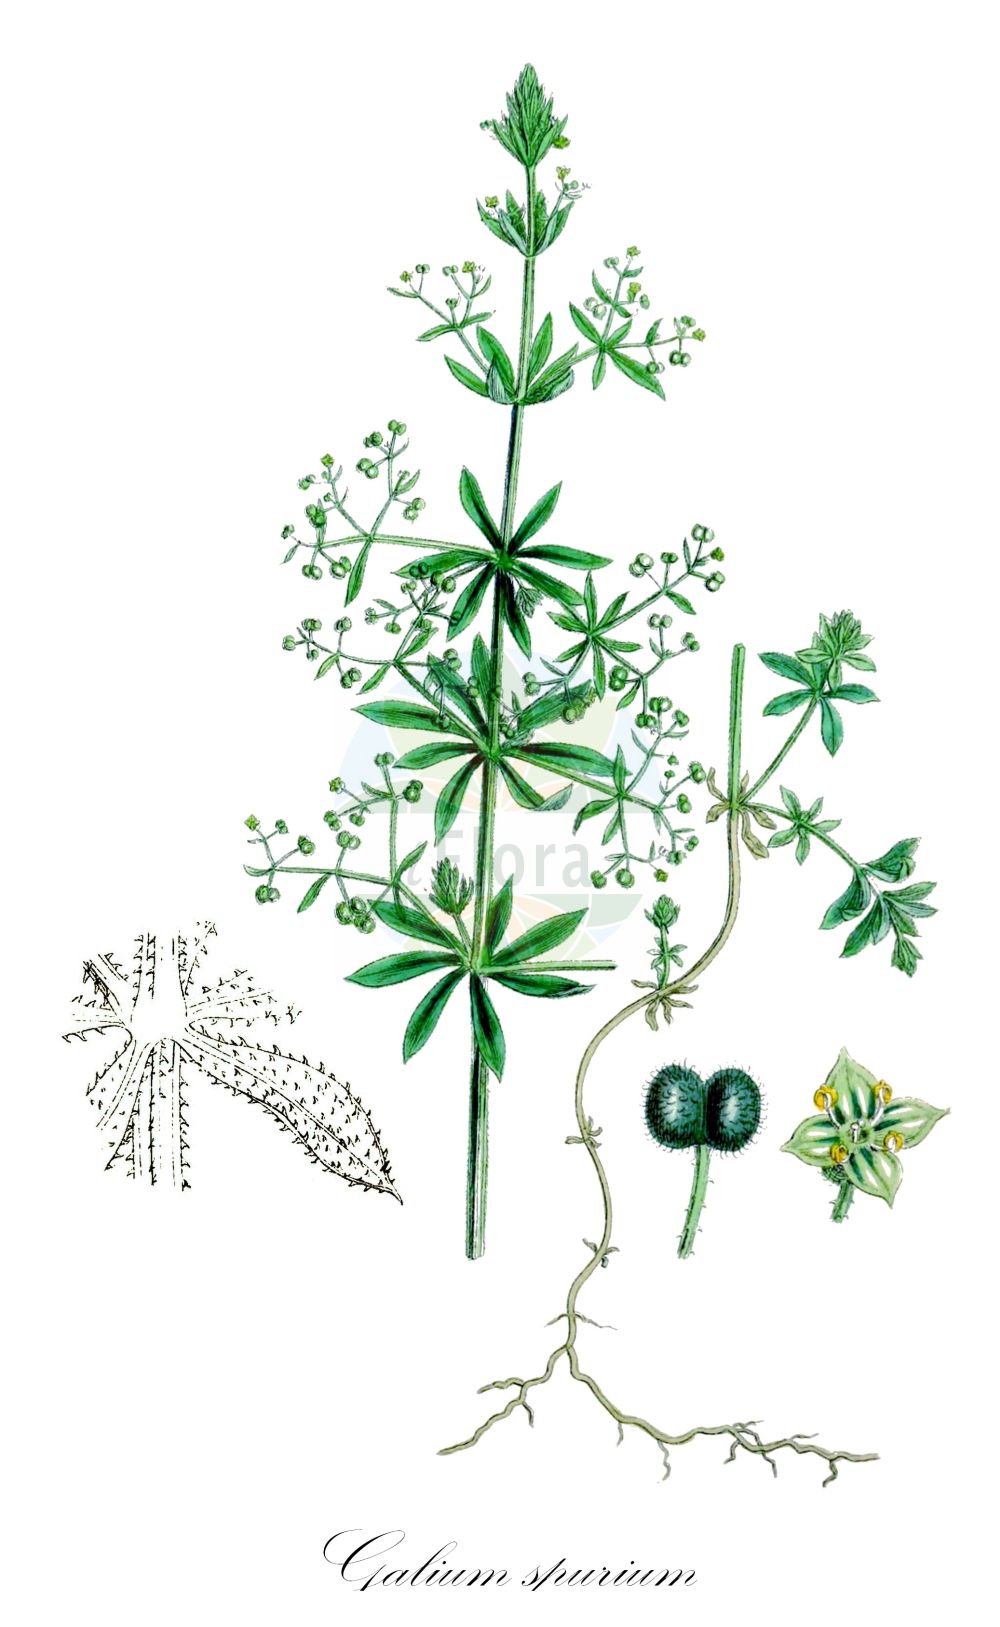 Historische Abbildung von Galium spurium (Acker-Labkraut - False Cleavers). Das Bild zeigt Blatt, Bluete, Frucht und Same. ---- Historical Drawing of Galium spurium (Acker-Labkraut - False Cleavers). The image is showing leaf, flower, fruit and seed.(Galium spurium,Acker-Labkraut,False Cleavers,Galium spurium,Acker-Labkraut,Gruenbluetiges Labkraut,Saat-Labkraut,Vaillant-Acker-Labkraut,False Cleavers,Galium,Labkraut,Bedstraw,Rubiaceae,Rötegewächse,Bedstraw family,Blatt,Bluete,Frucht,Same,leaf,flower,fruit,seed,Sowerby (1790-1813))